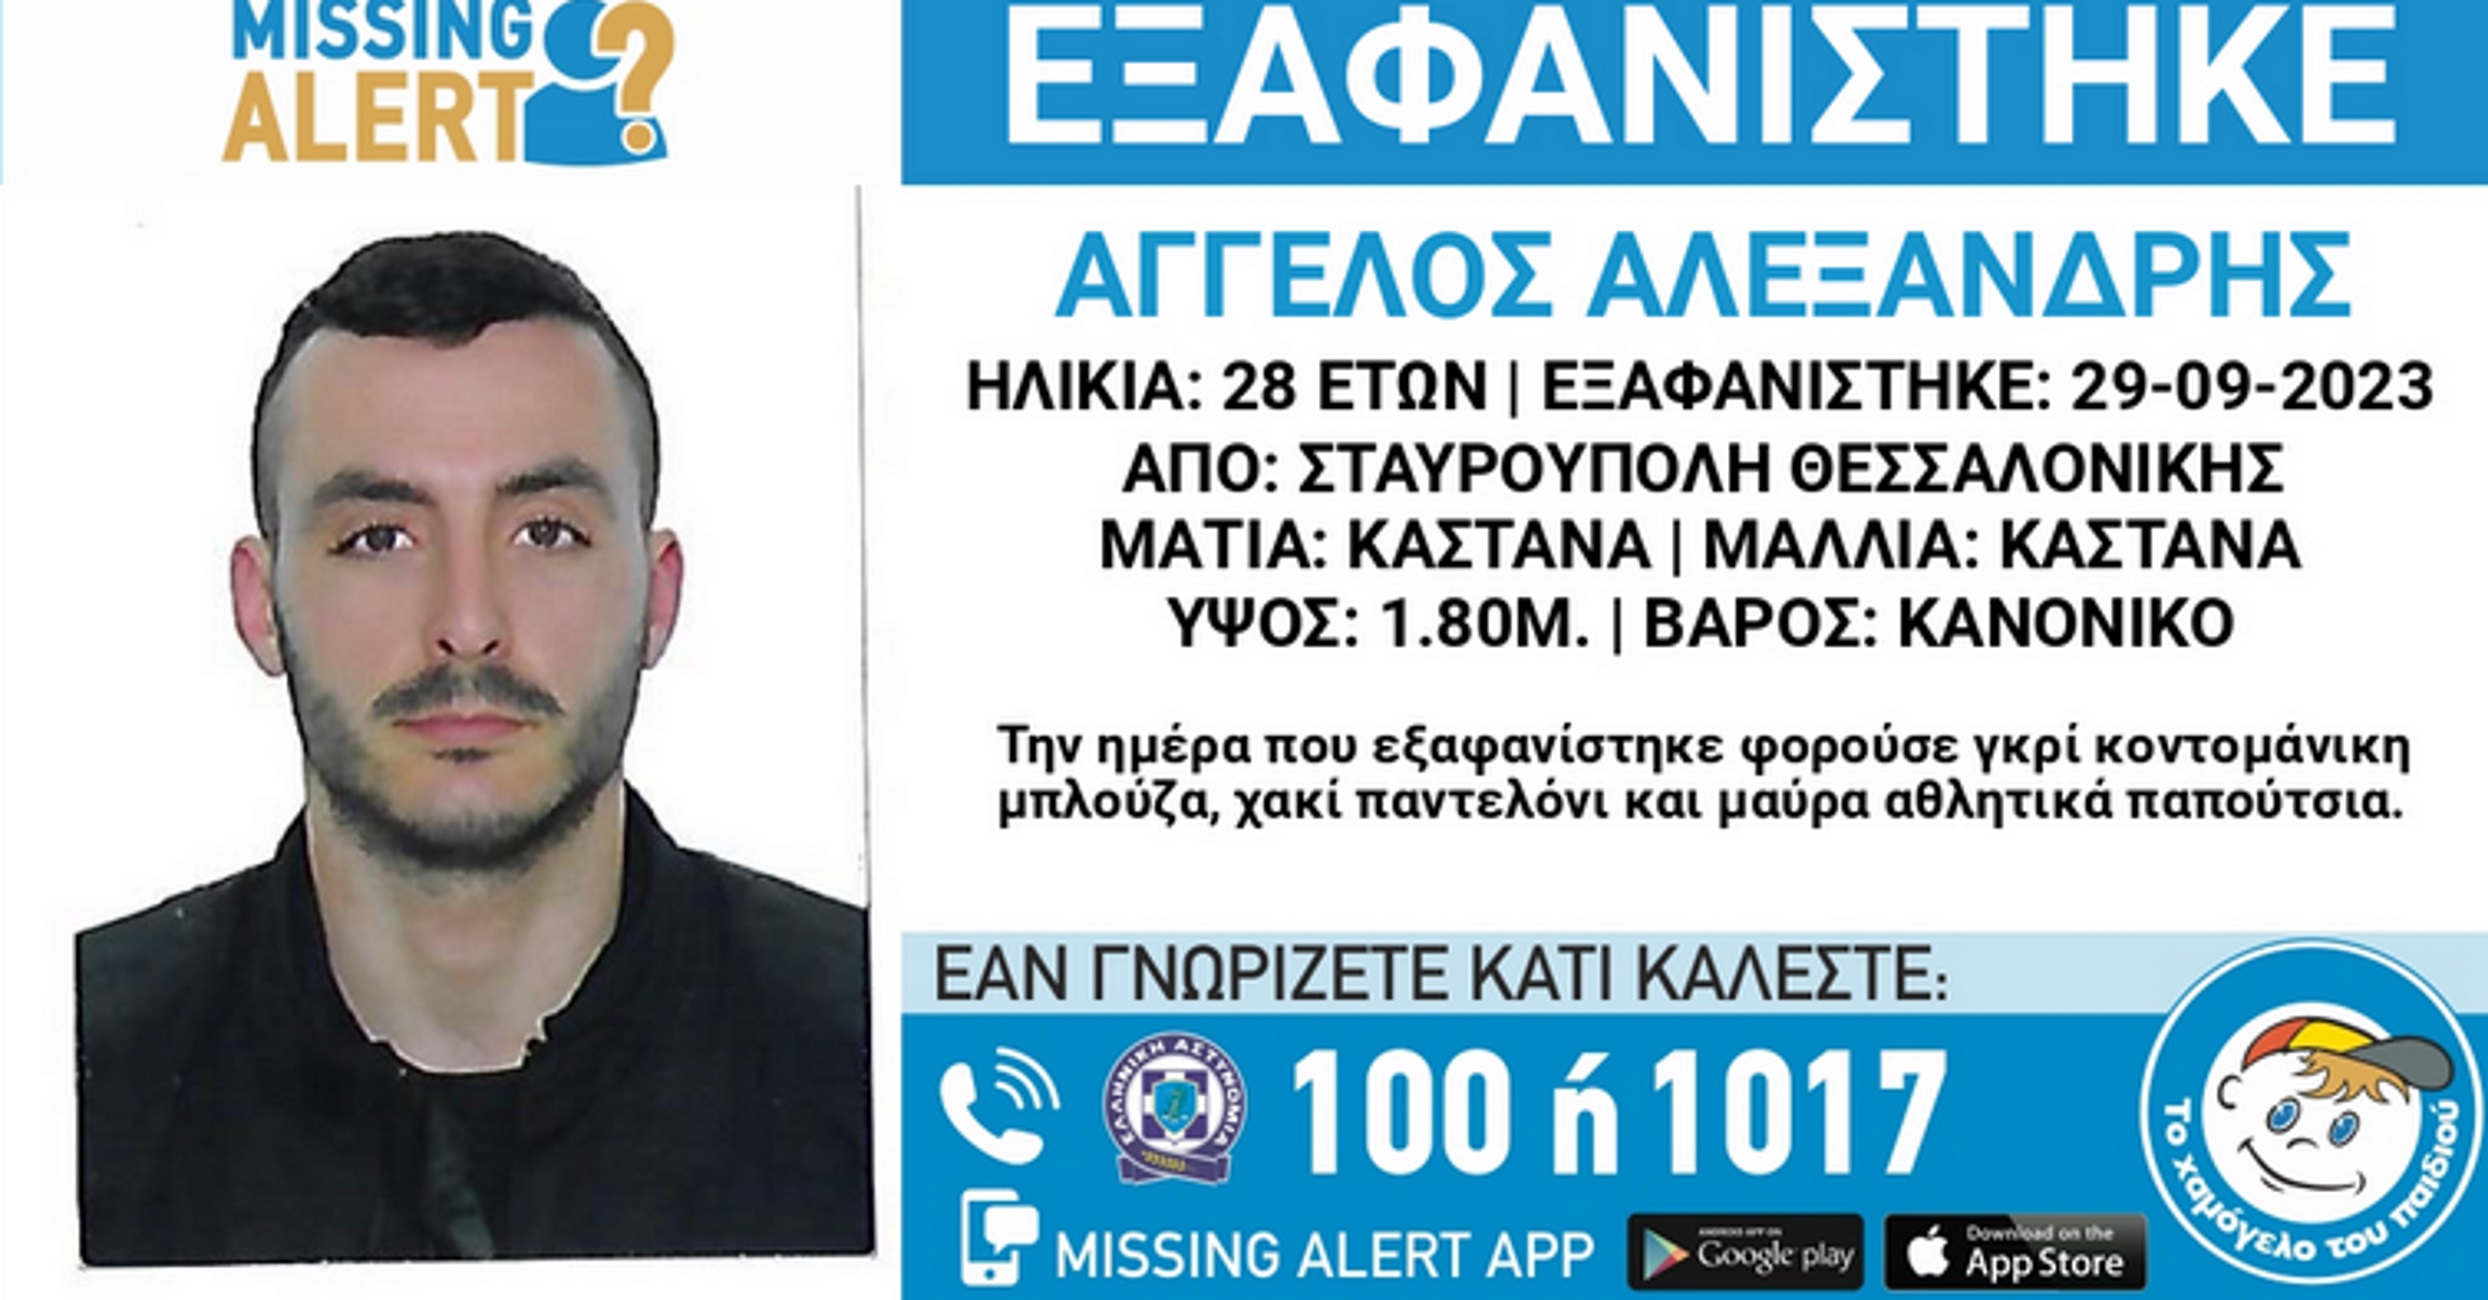 Θεσσαλονίκη: Εξαφάνιση 28χρονου στην Σταυρούπολη – Αγωνιώδεις έρευνες για τον Άγγελο Αλεξανδρή